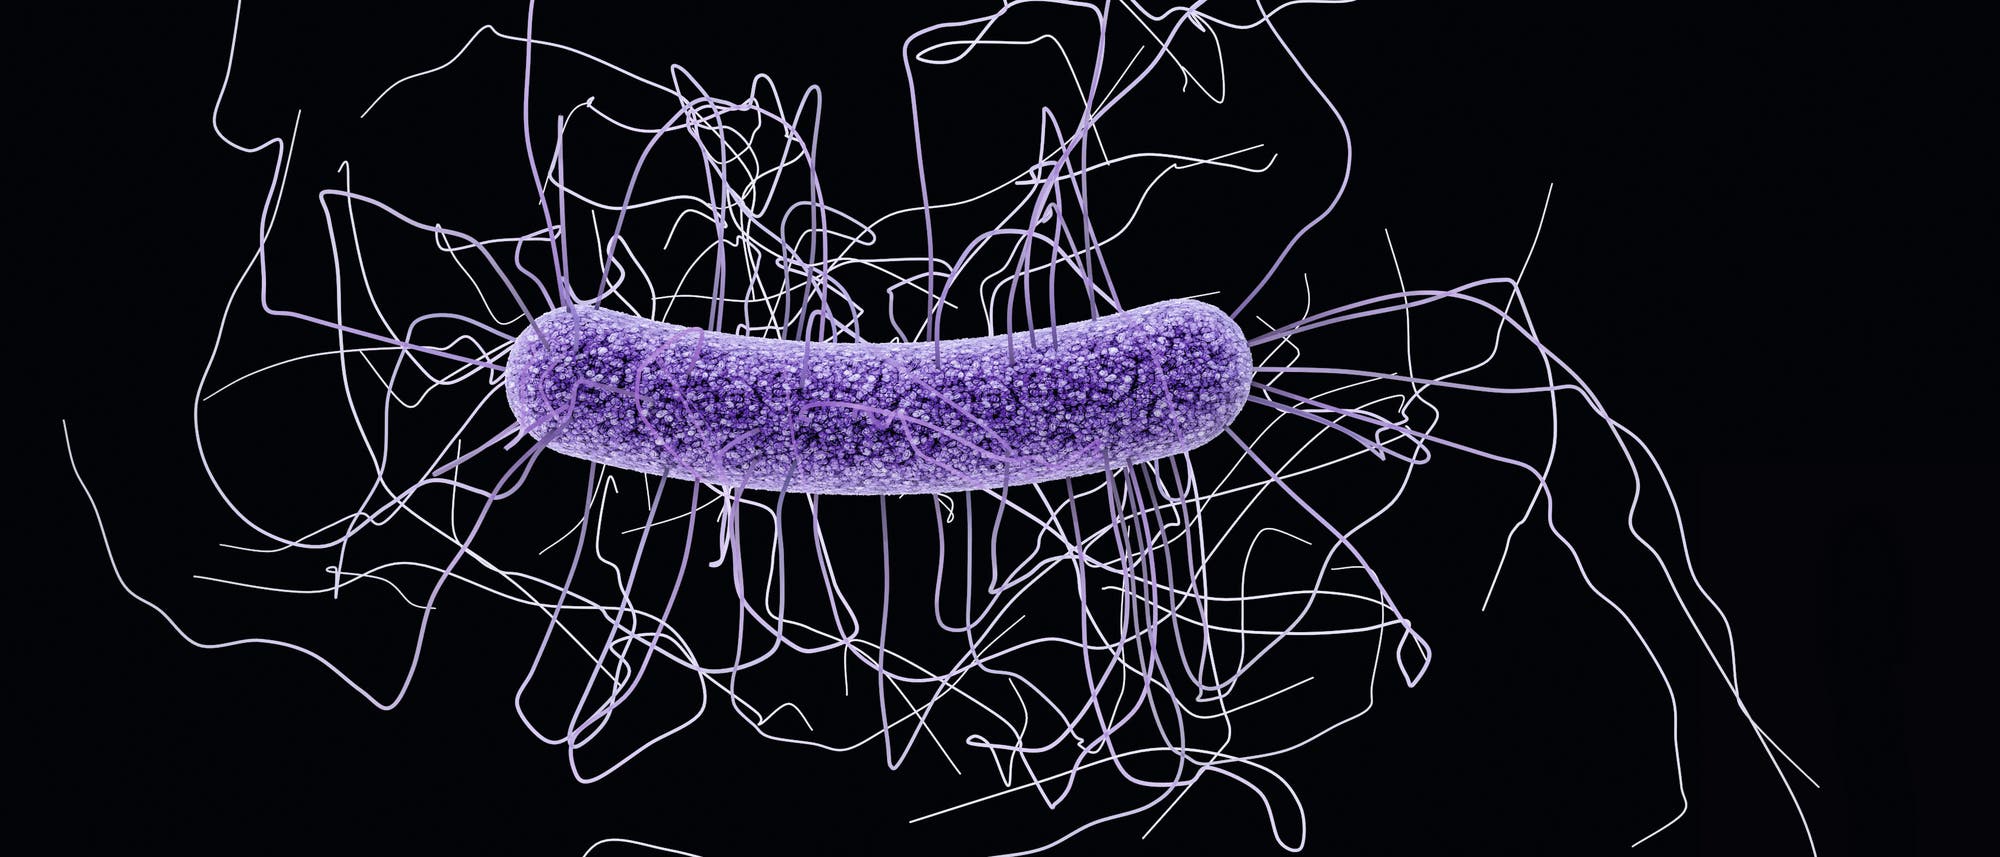 Bakterium Clostridium difficile